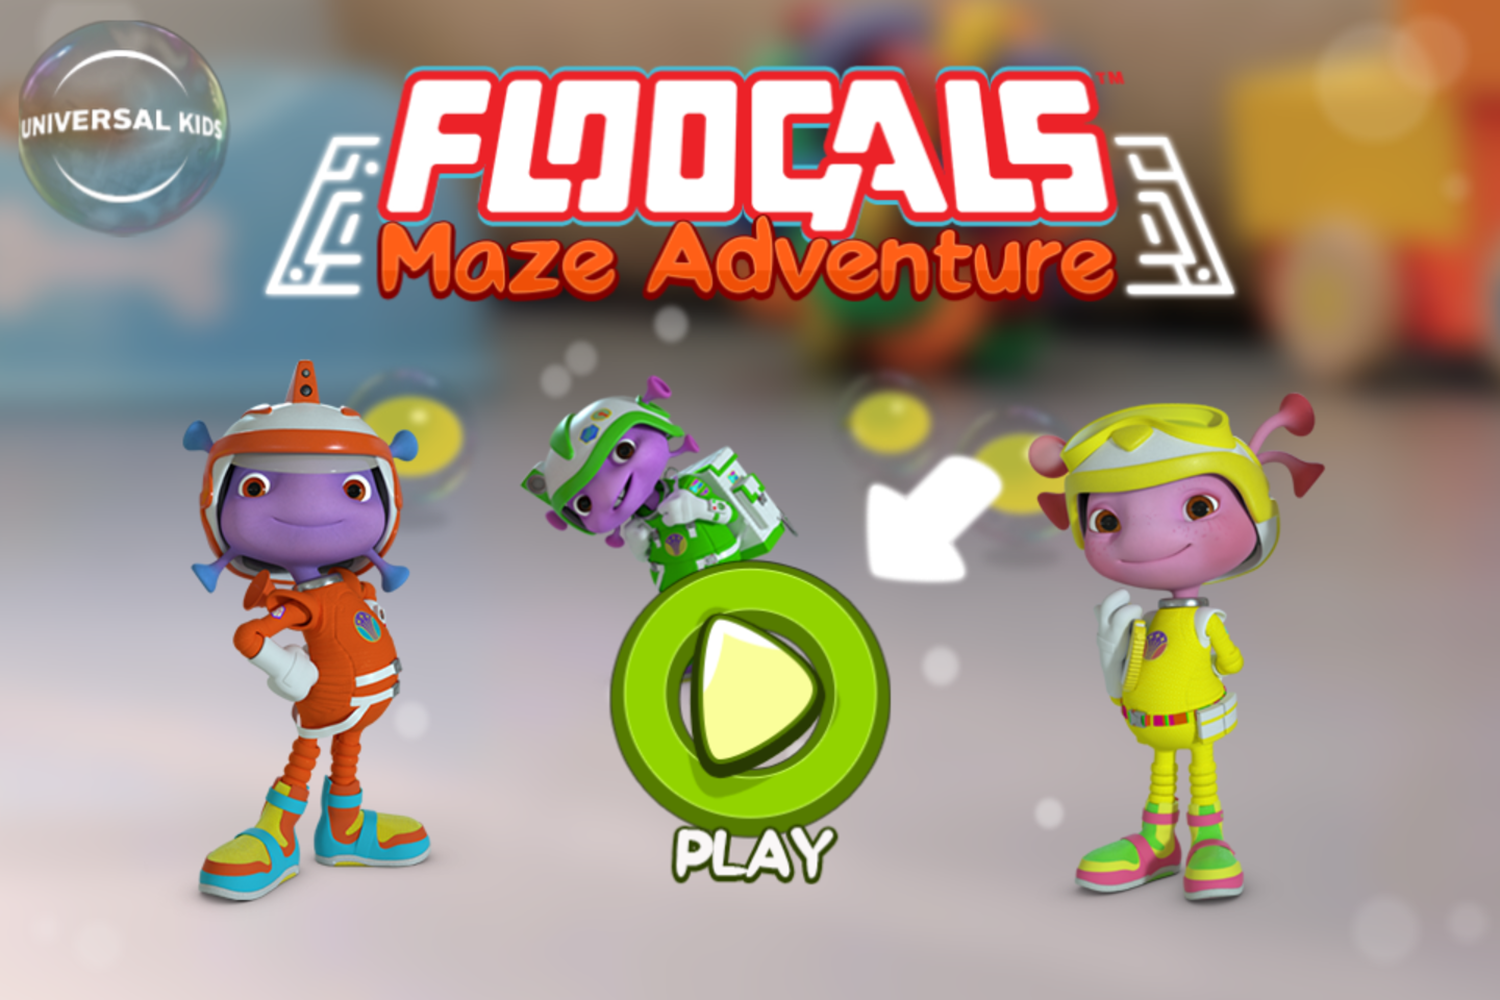 Floogals Maze Adventure Game Welcome Screen Screenshot.